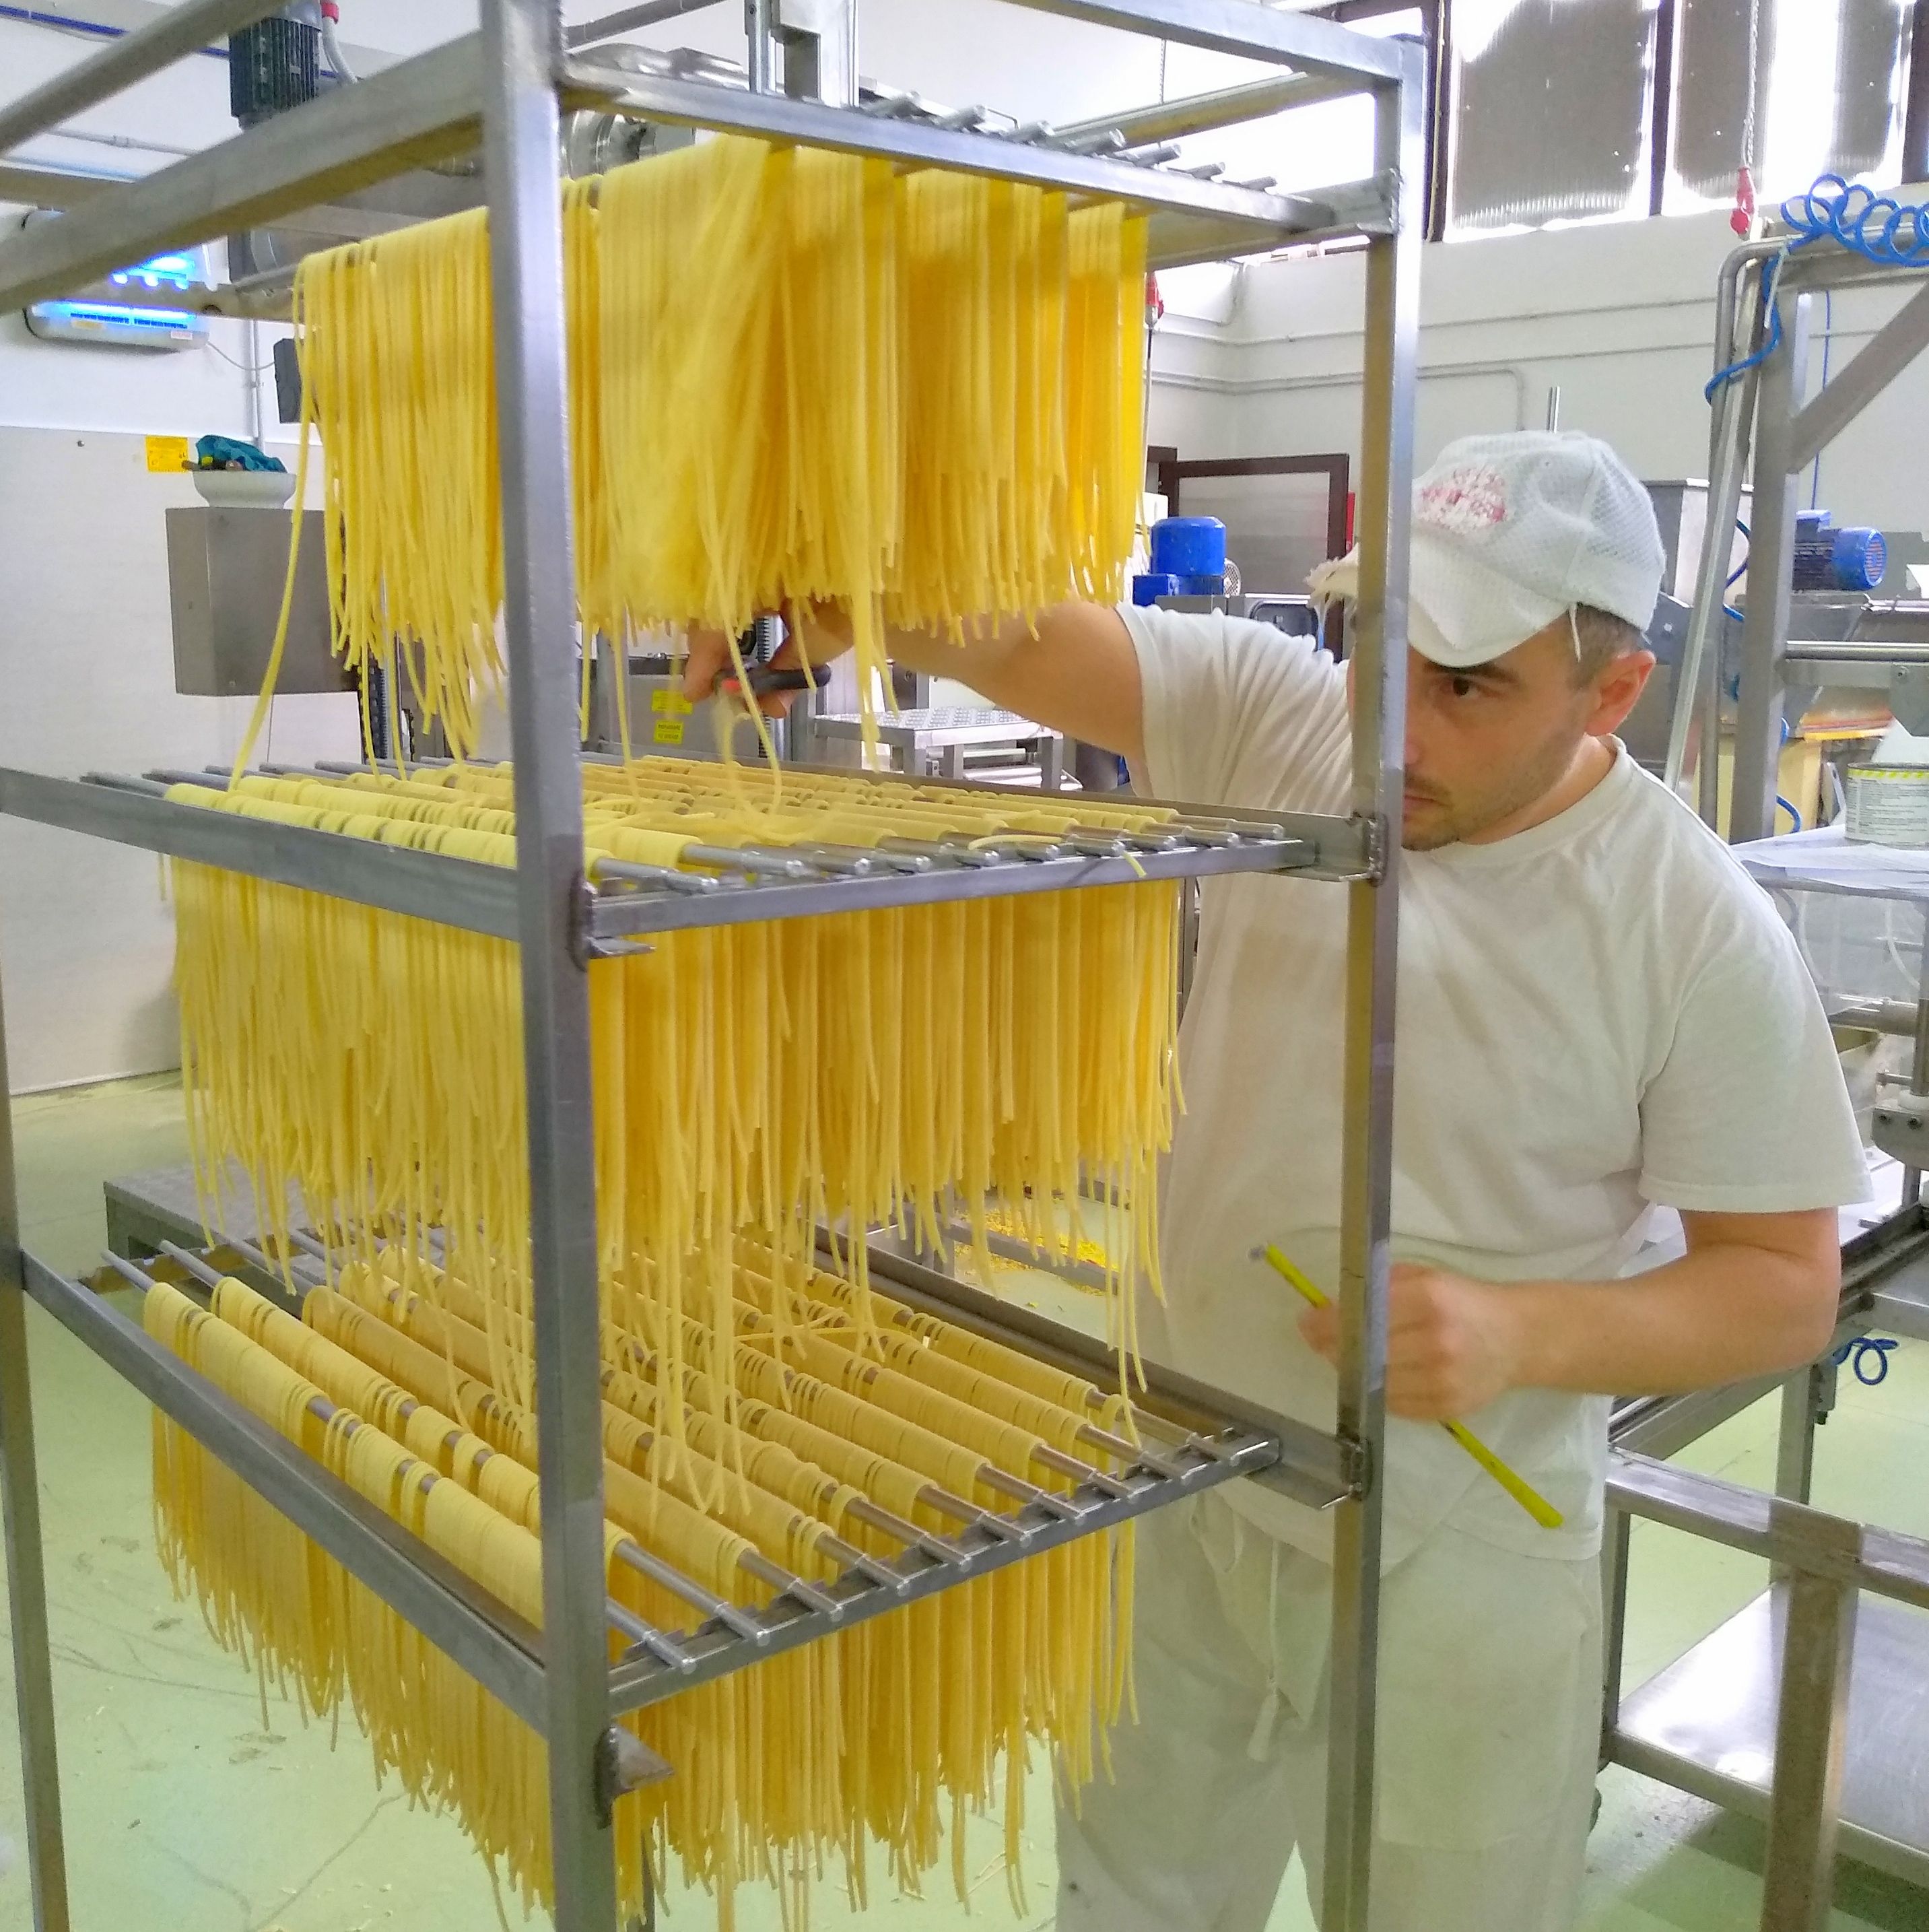 #PastaMarella #JunkoIkuta #DomenicoCafarchia #LocalGuide